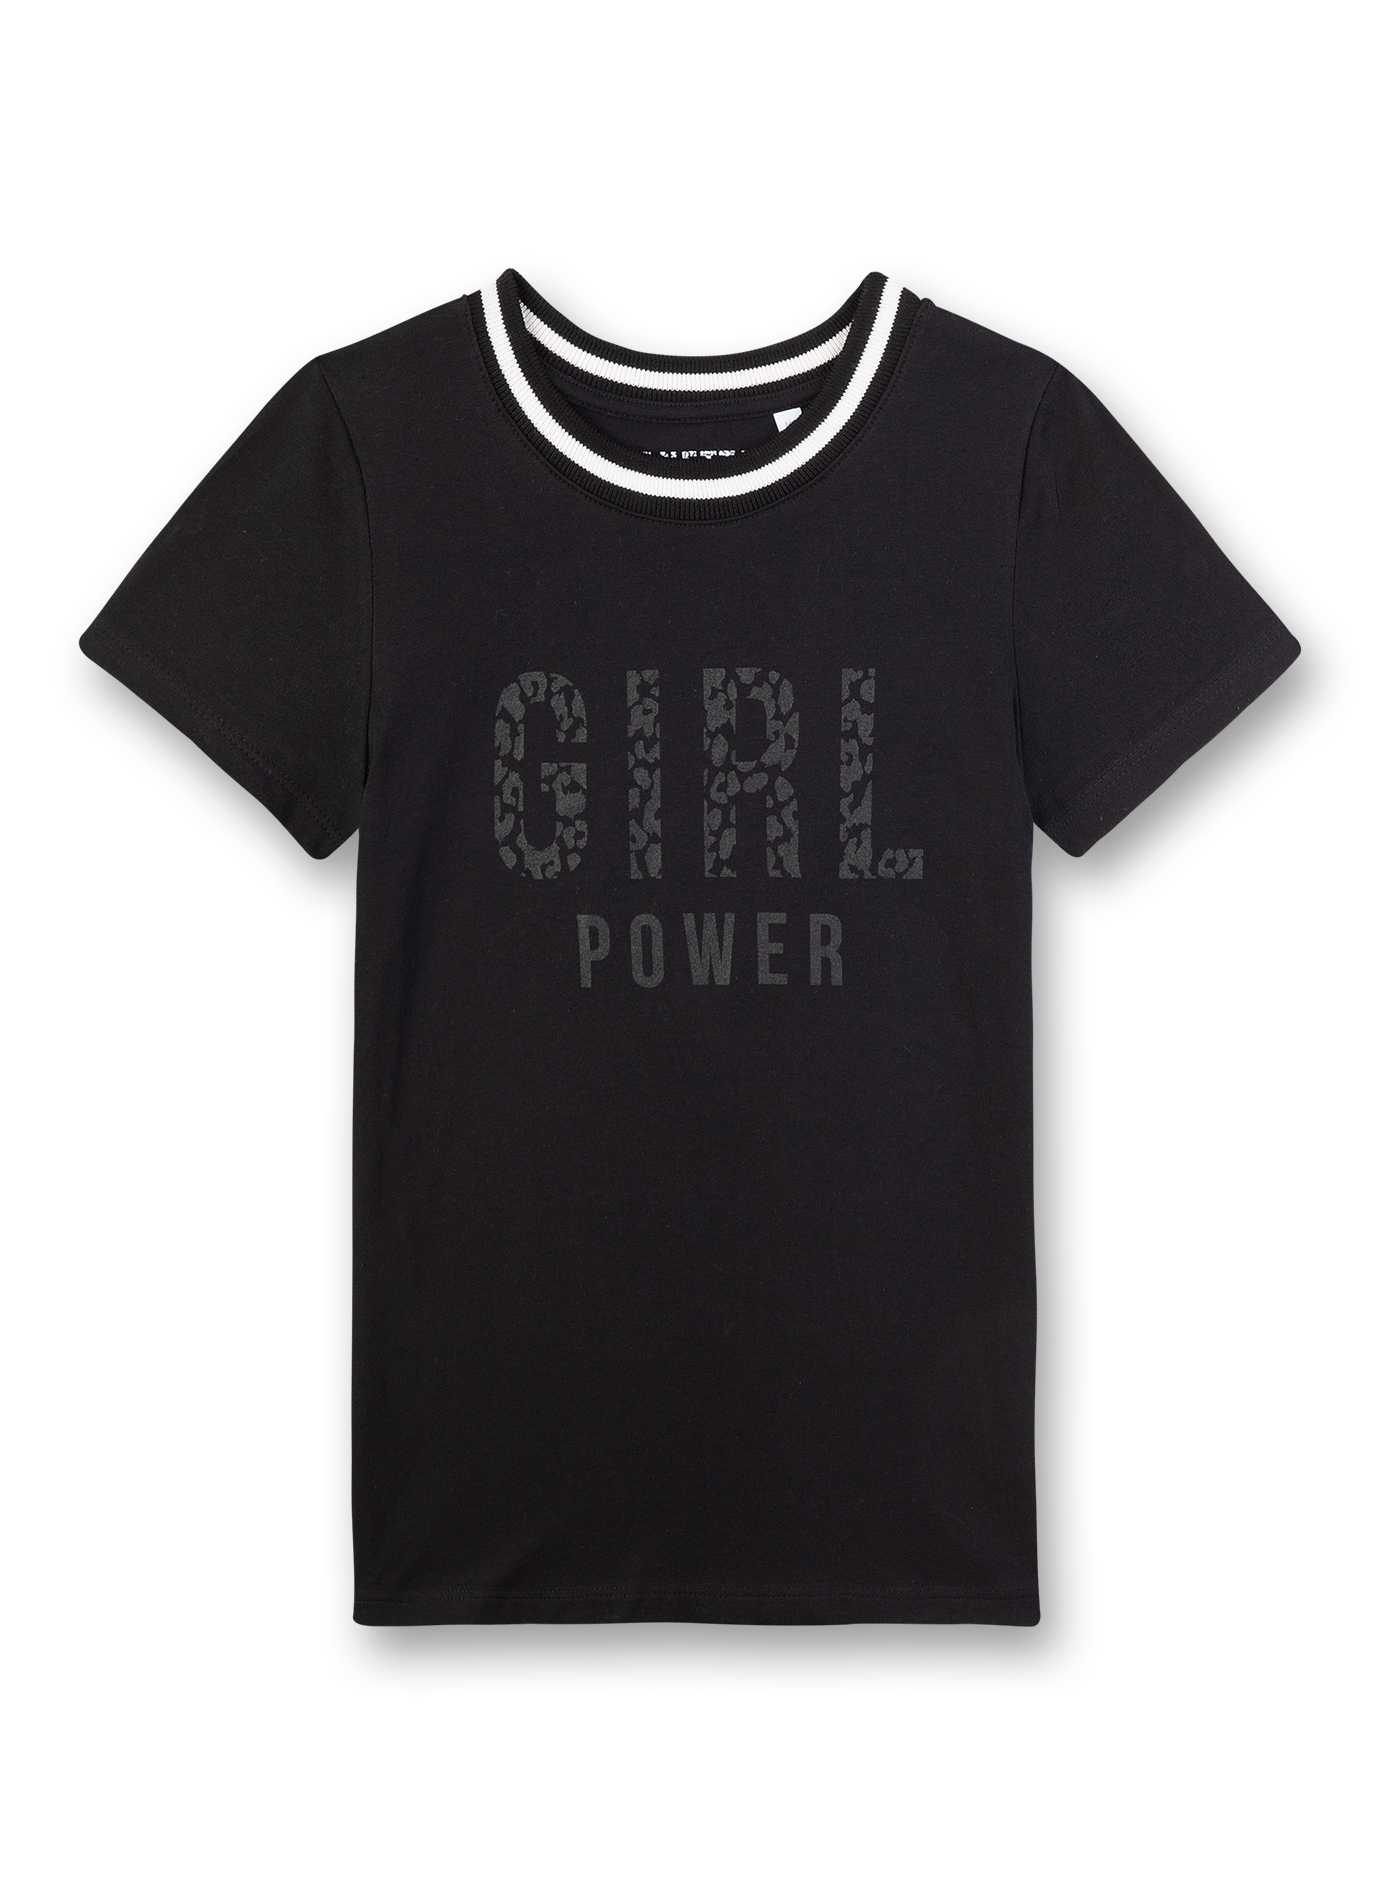 Mädchen T-Shirt Schwarz Athleisure